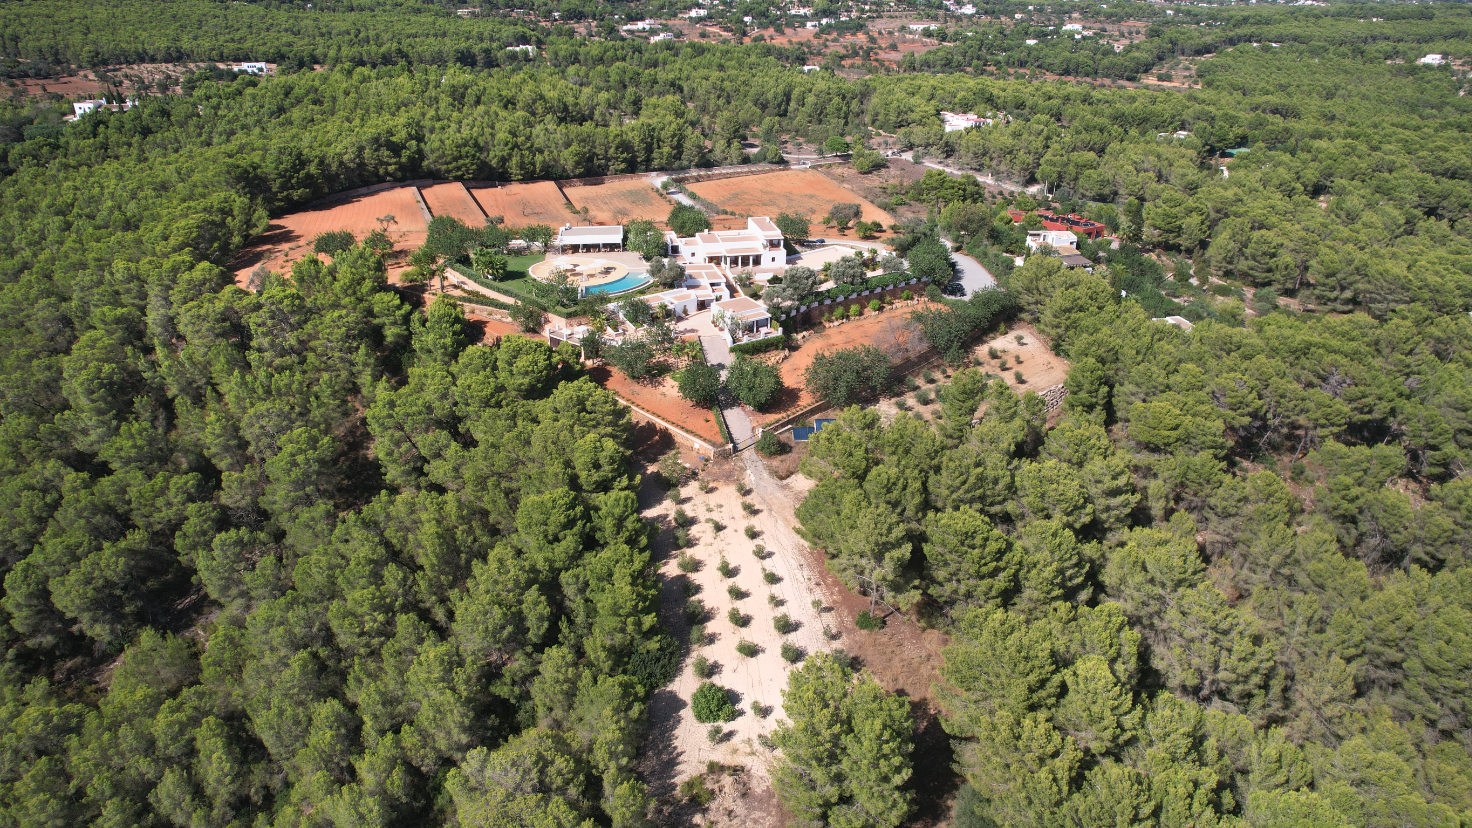 agroturismo ibiza can toni xumeu dron 006 - LeibTour: TOP aparthotels in Ibiza